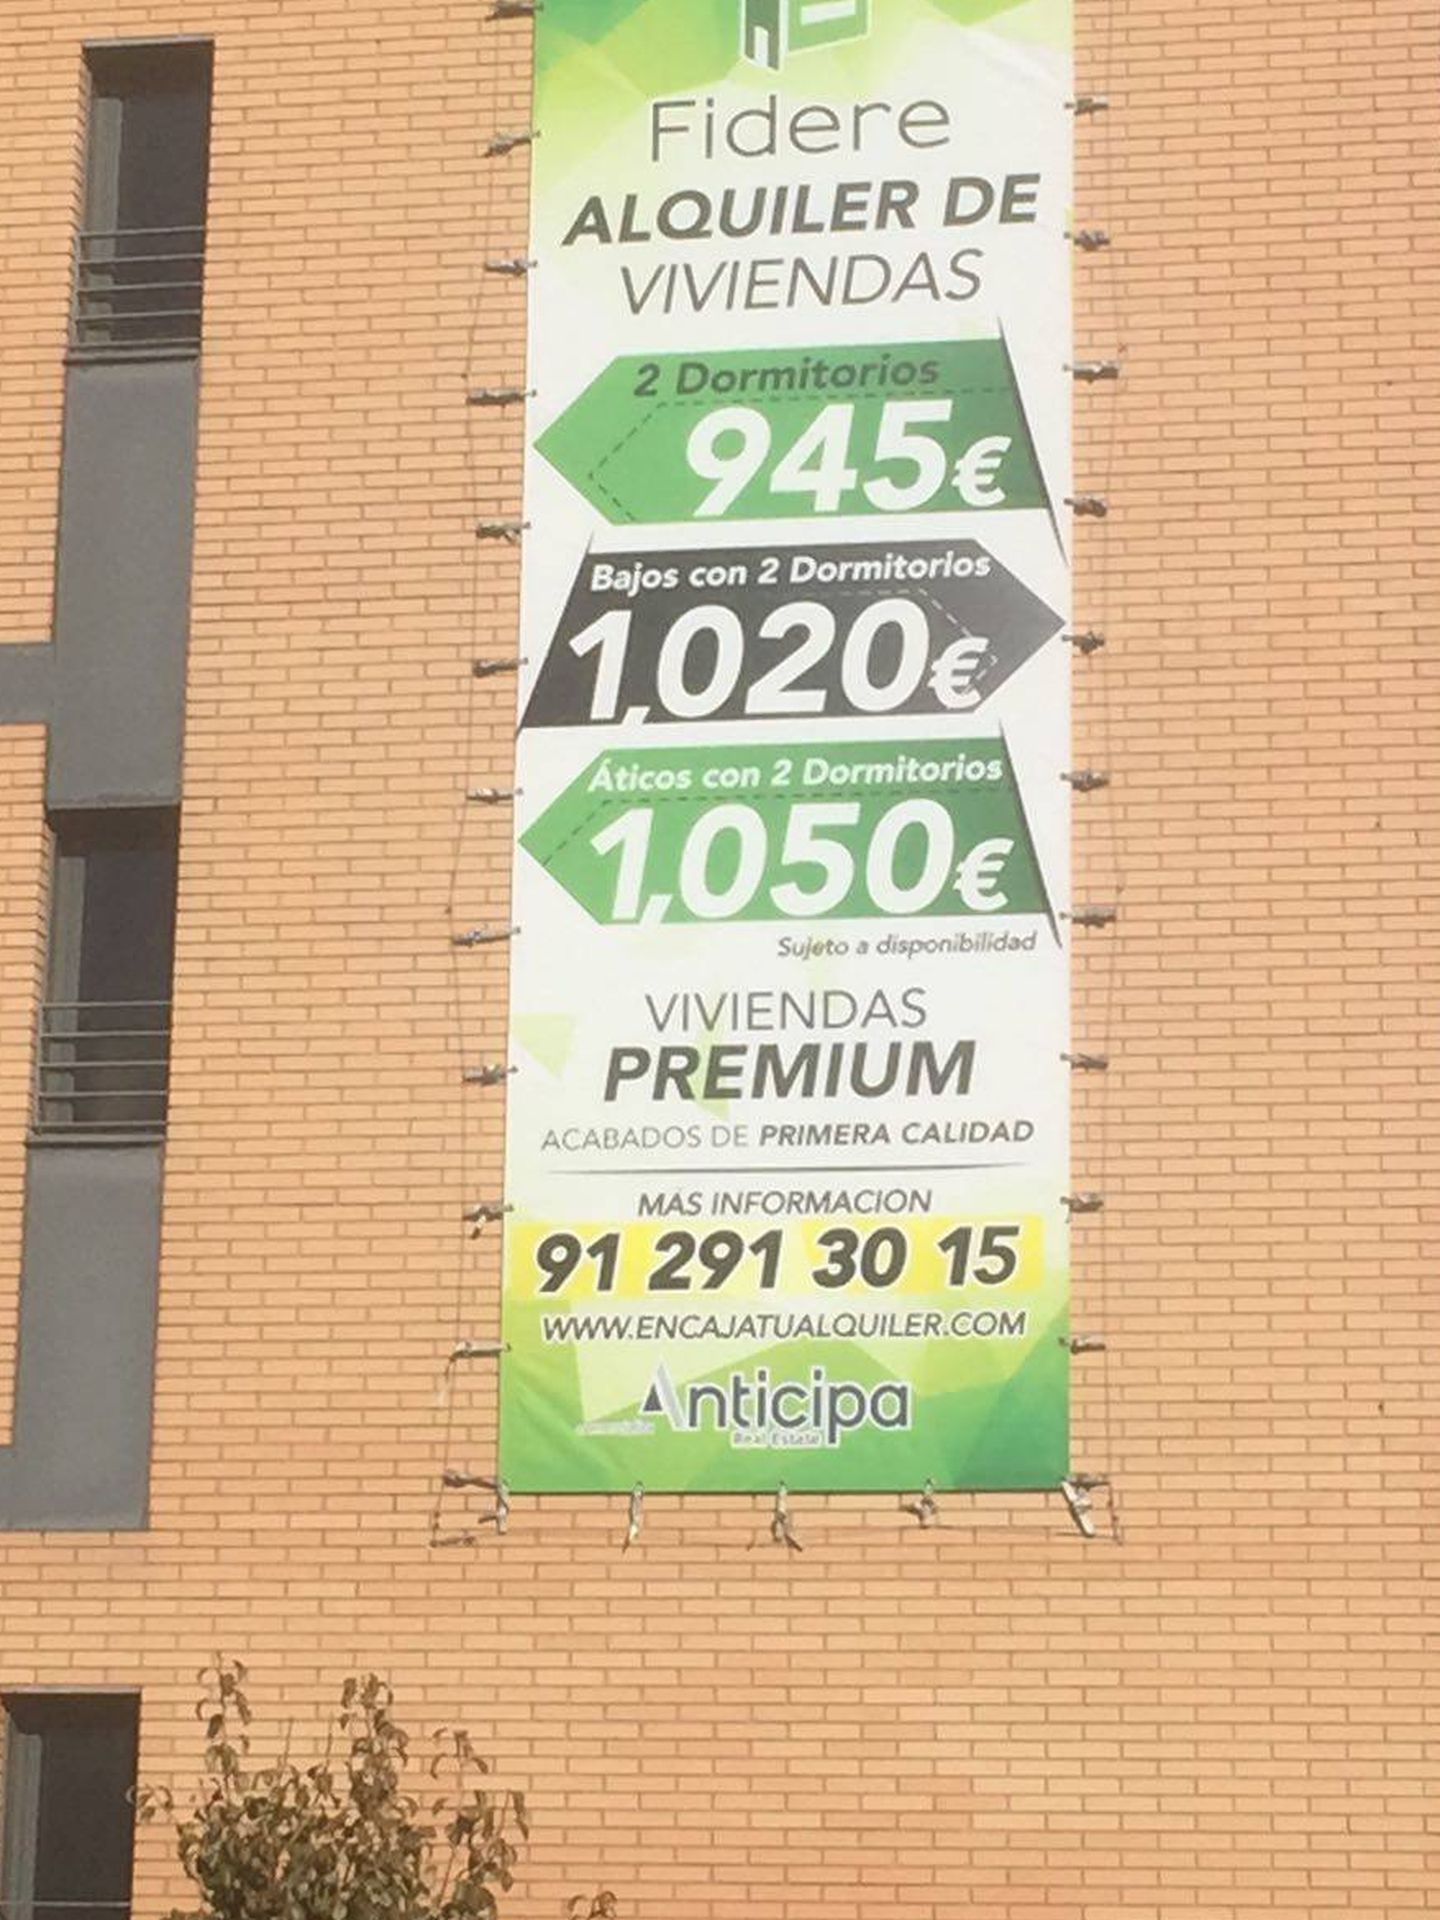 Una cartel de Fidere, anunciando las ofertas de alquiler de los pisos de El Montecillo.